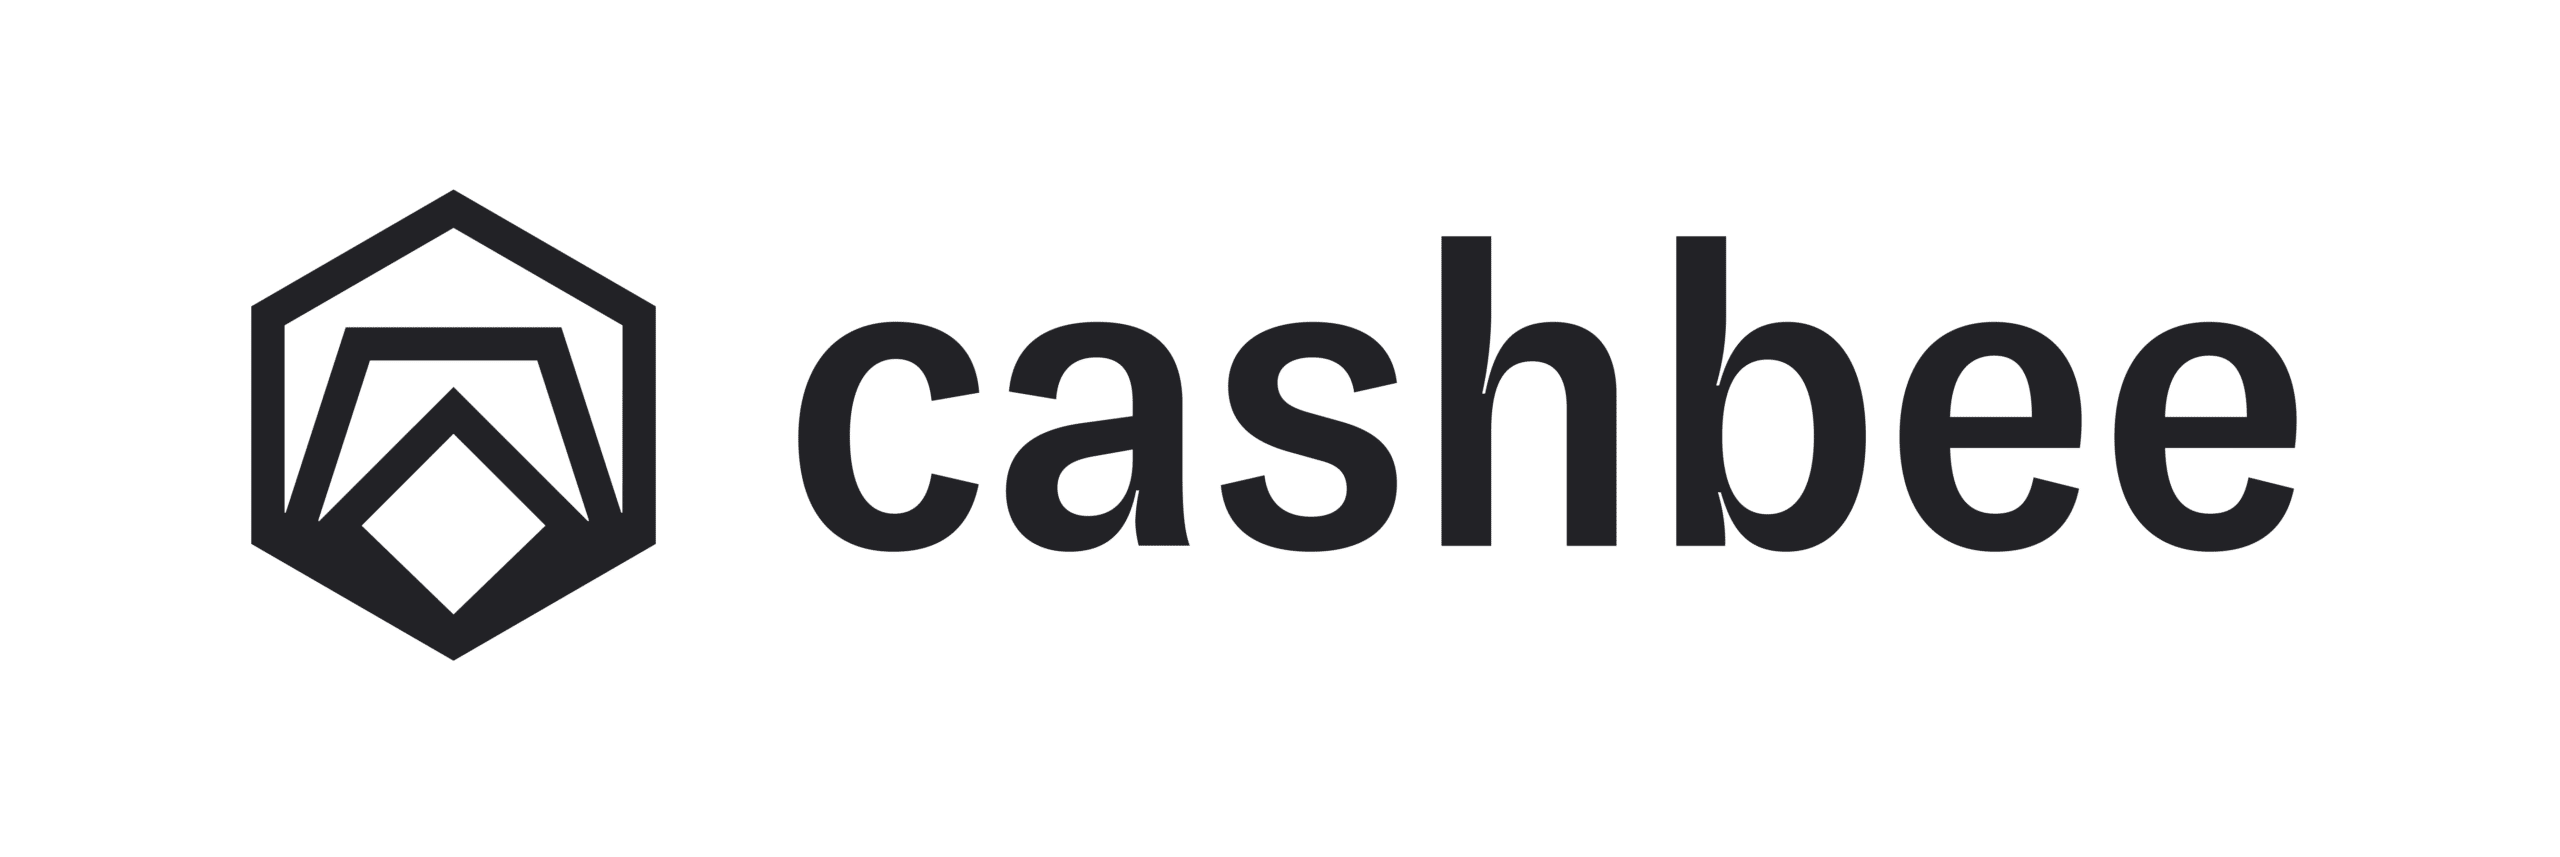 Cashbee : Frais et gratuité